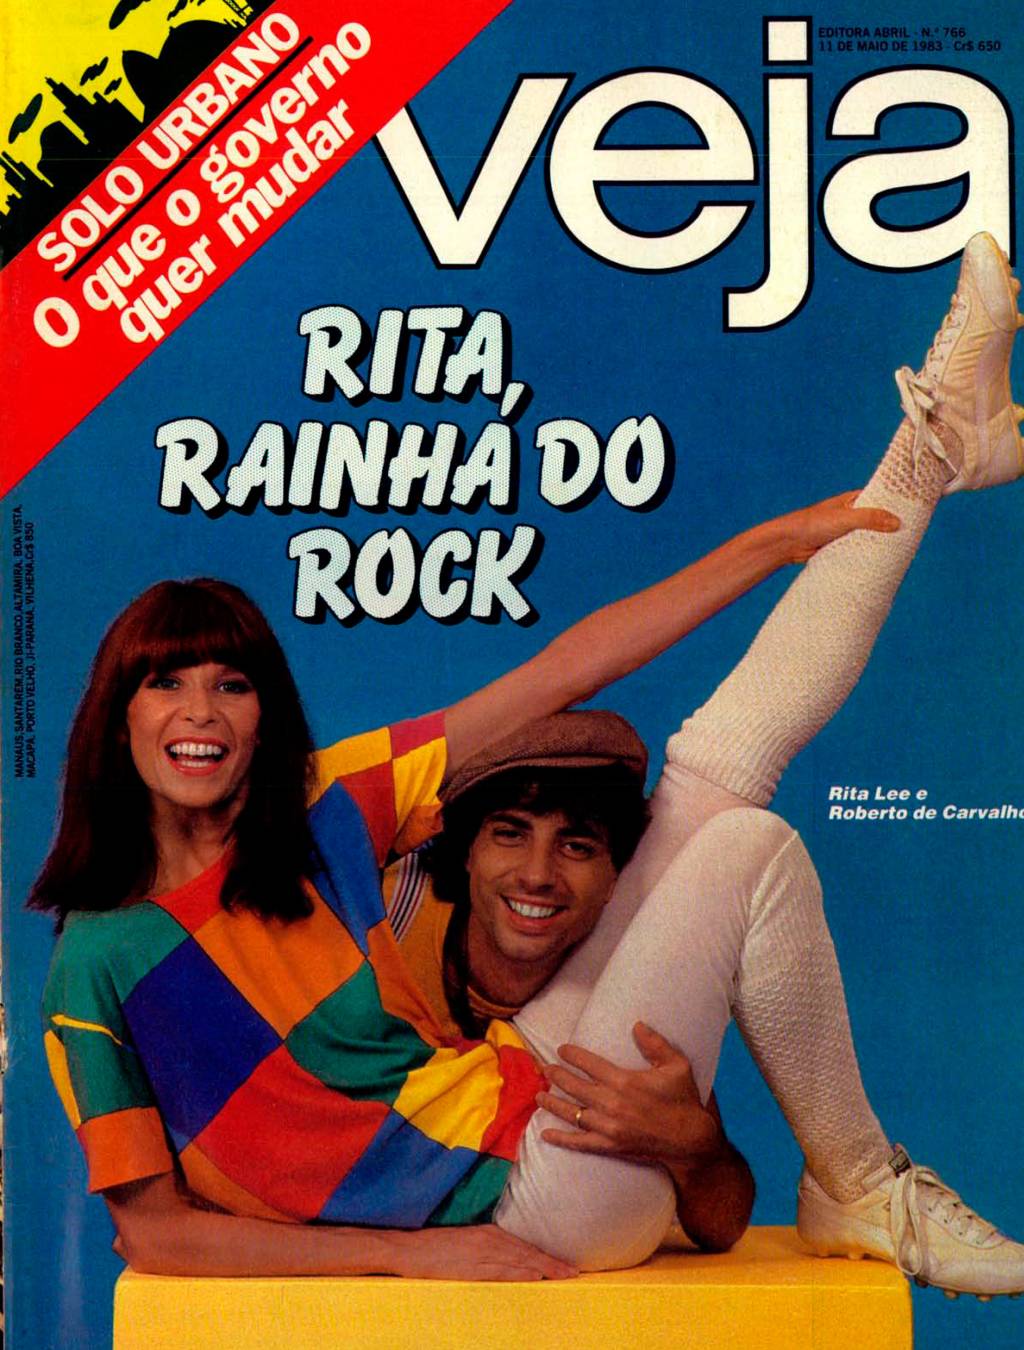 Capa de VEJA de 11 de maio de 1983, com um perfil de Rita Lee e Roberto de Carvalho